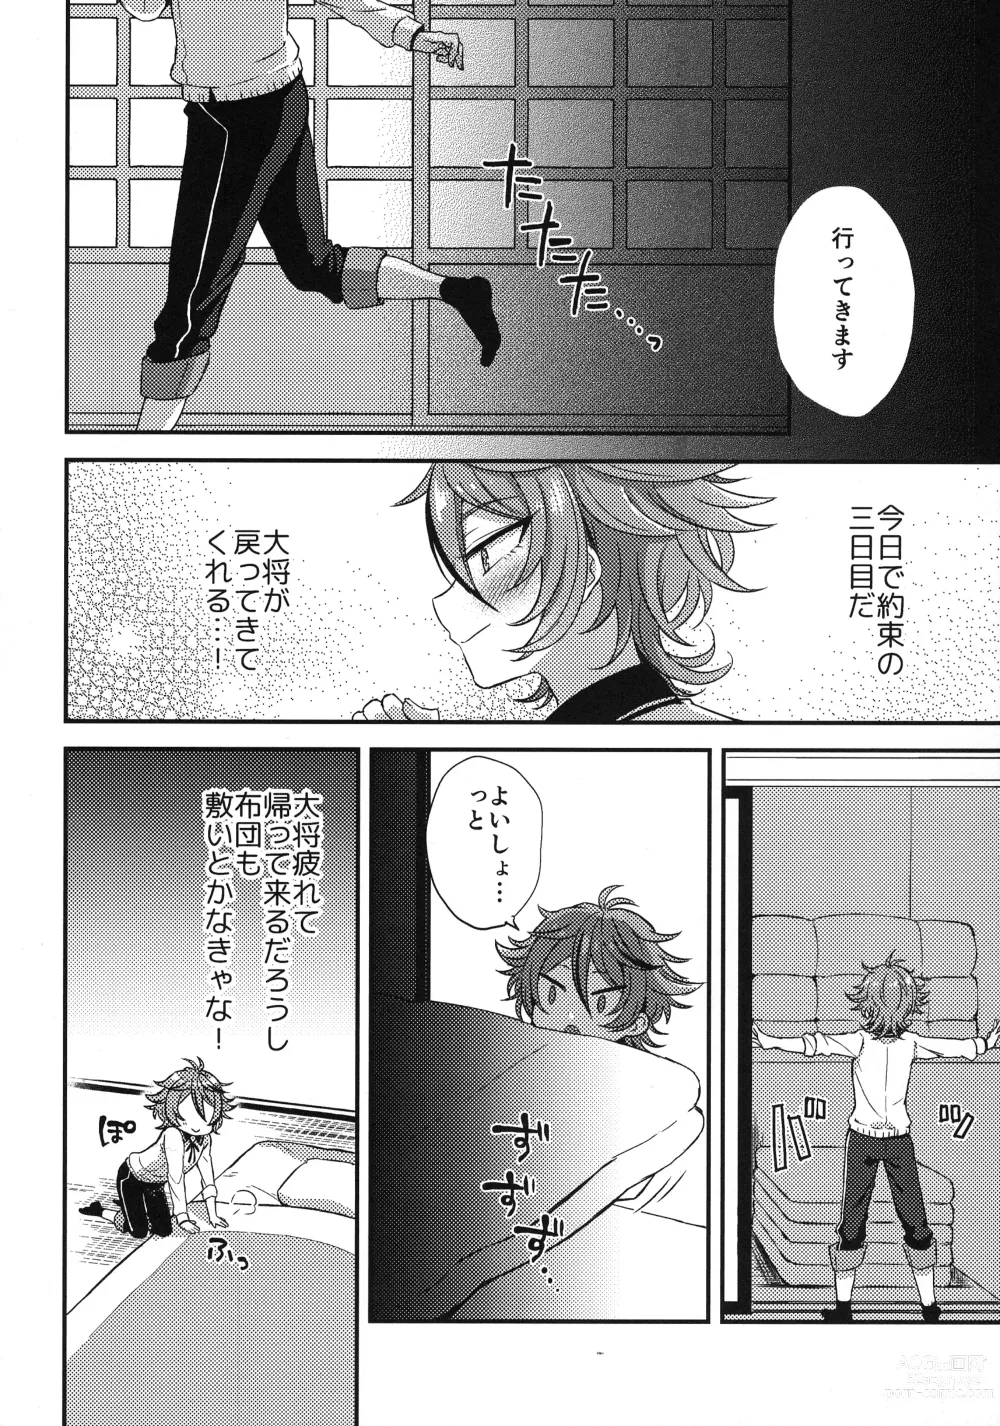 Page 17 of doujinshi Sanigoto Sairoku!